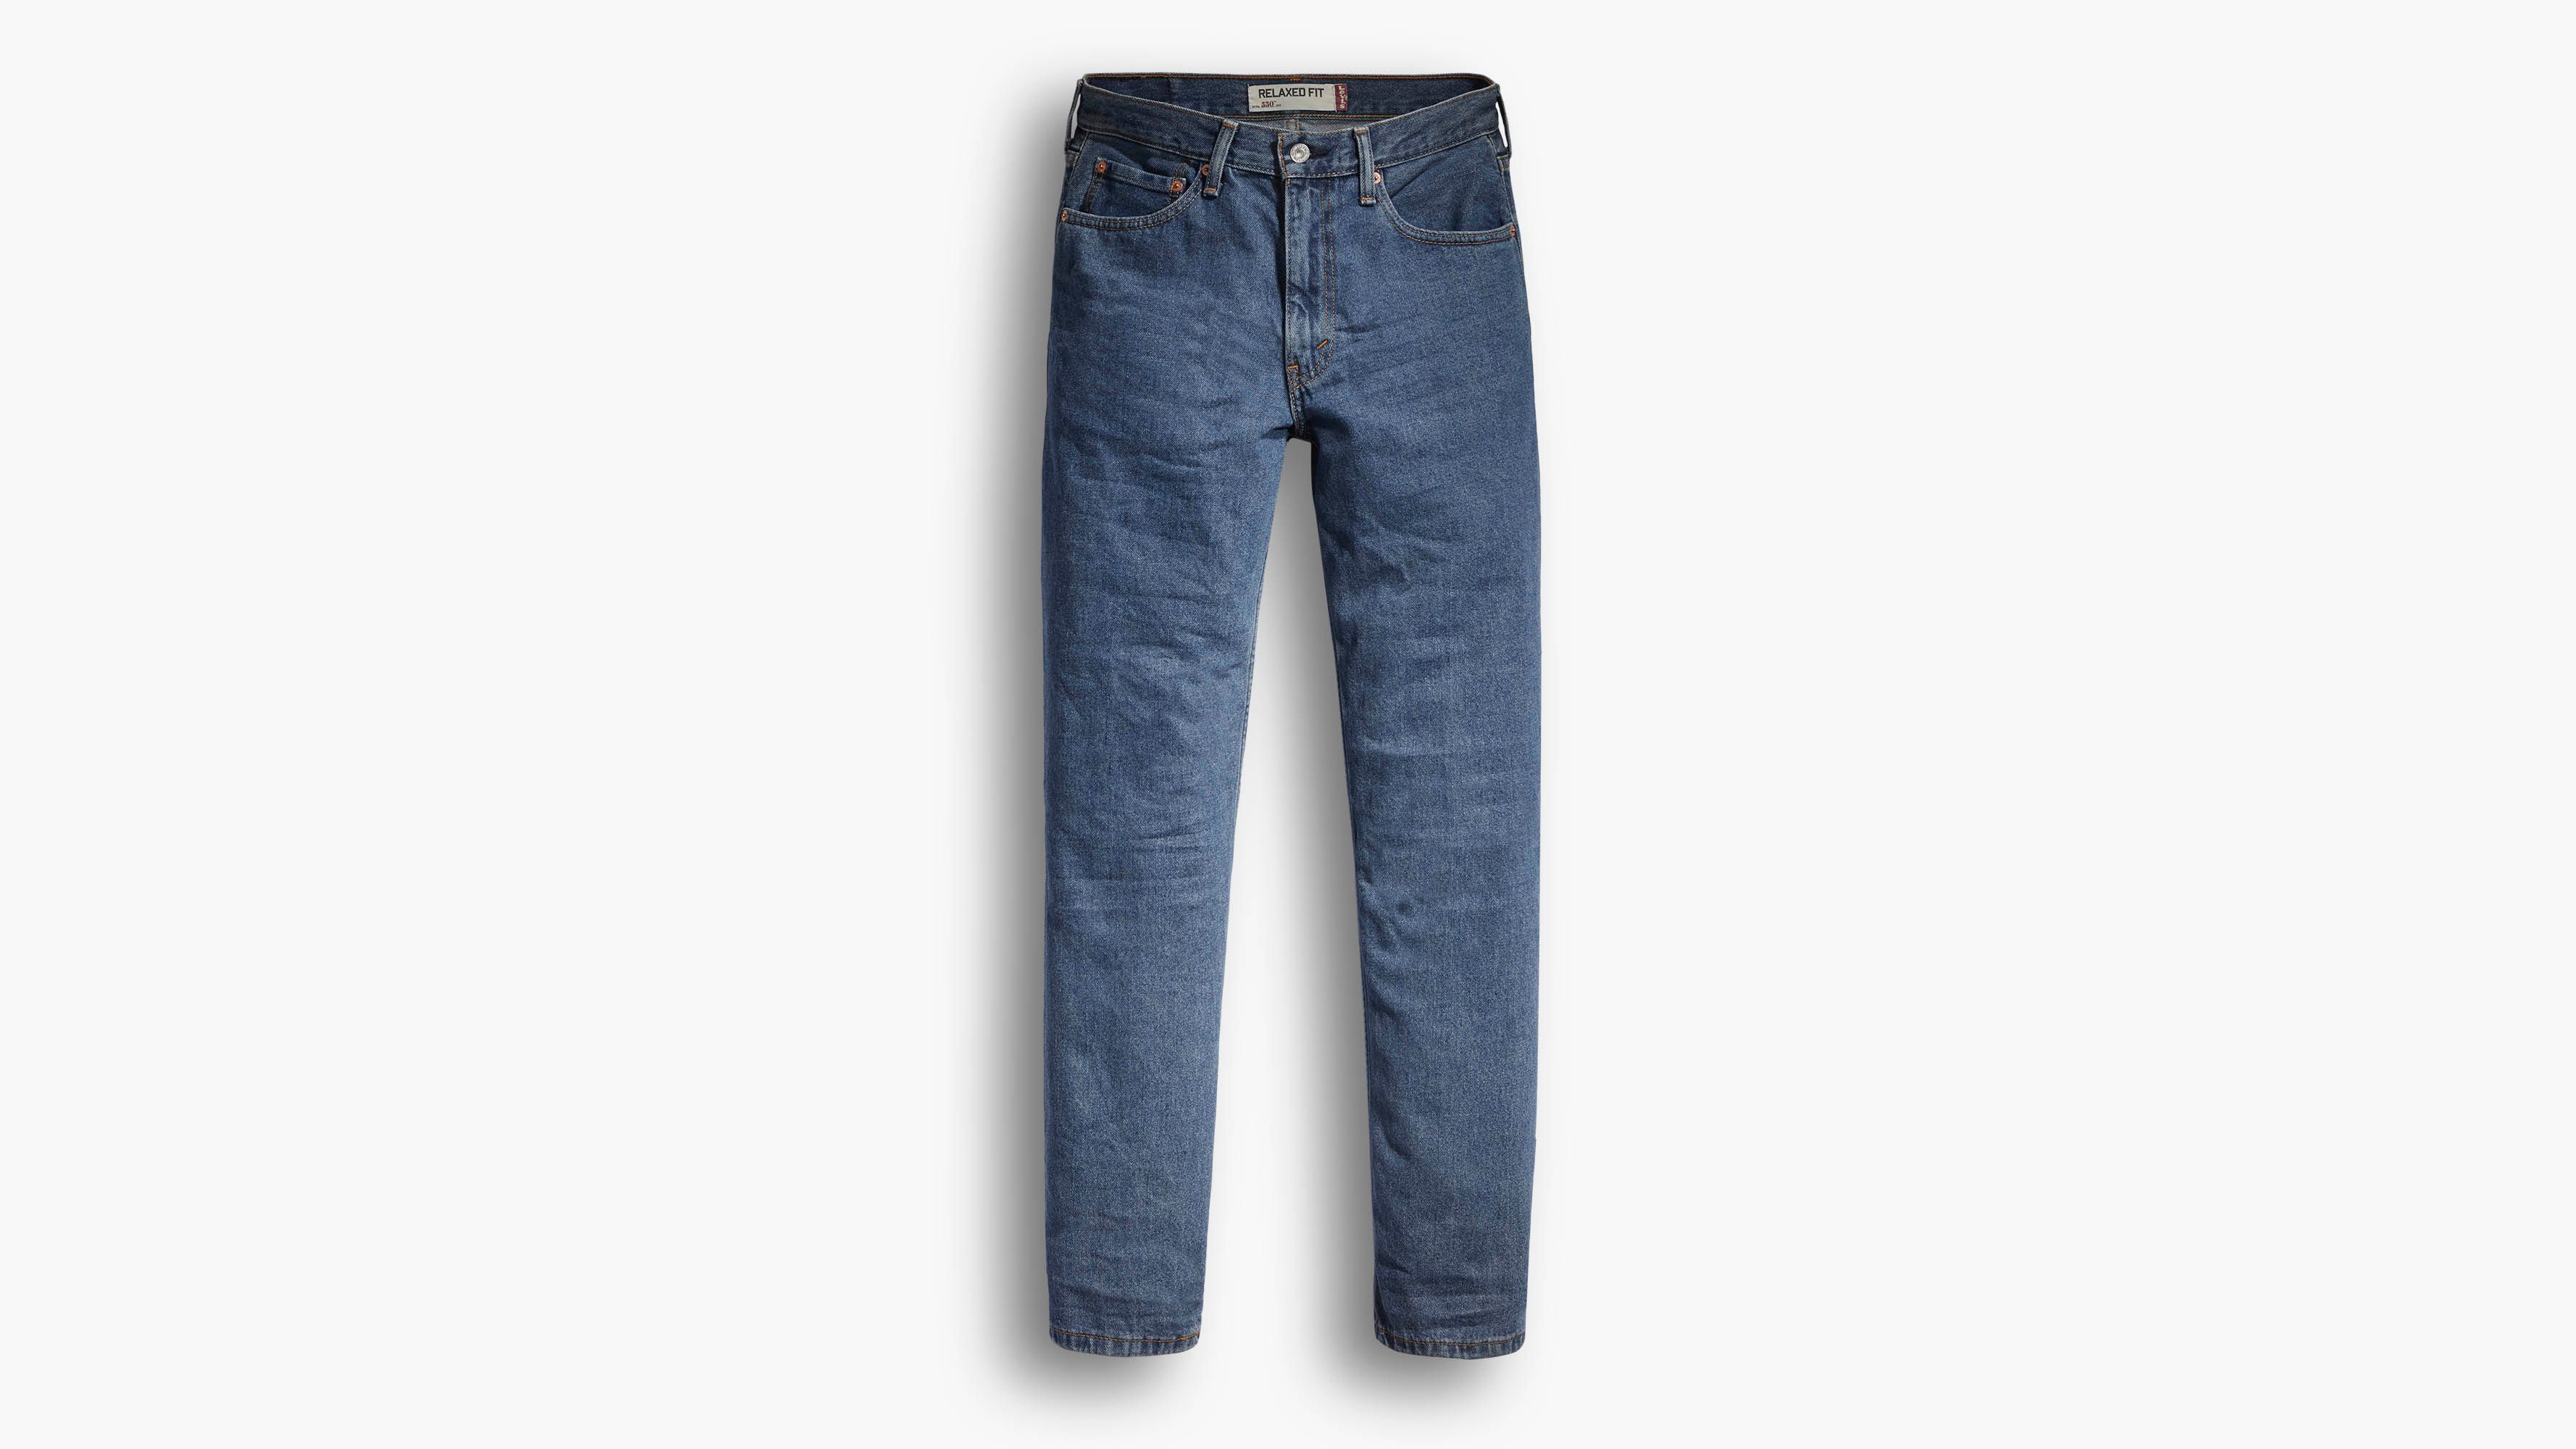 Atticus koel condoom 550™ Relaxed Fit Men's Jeans - Dark Wash | Levi's® US